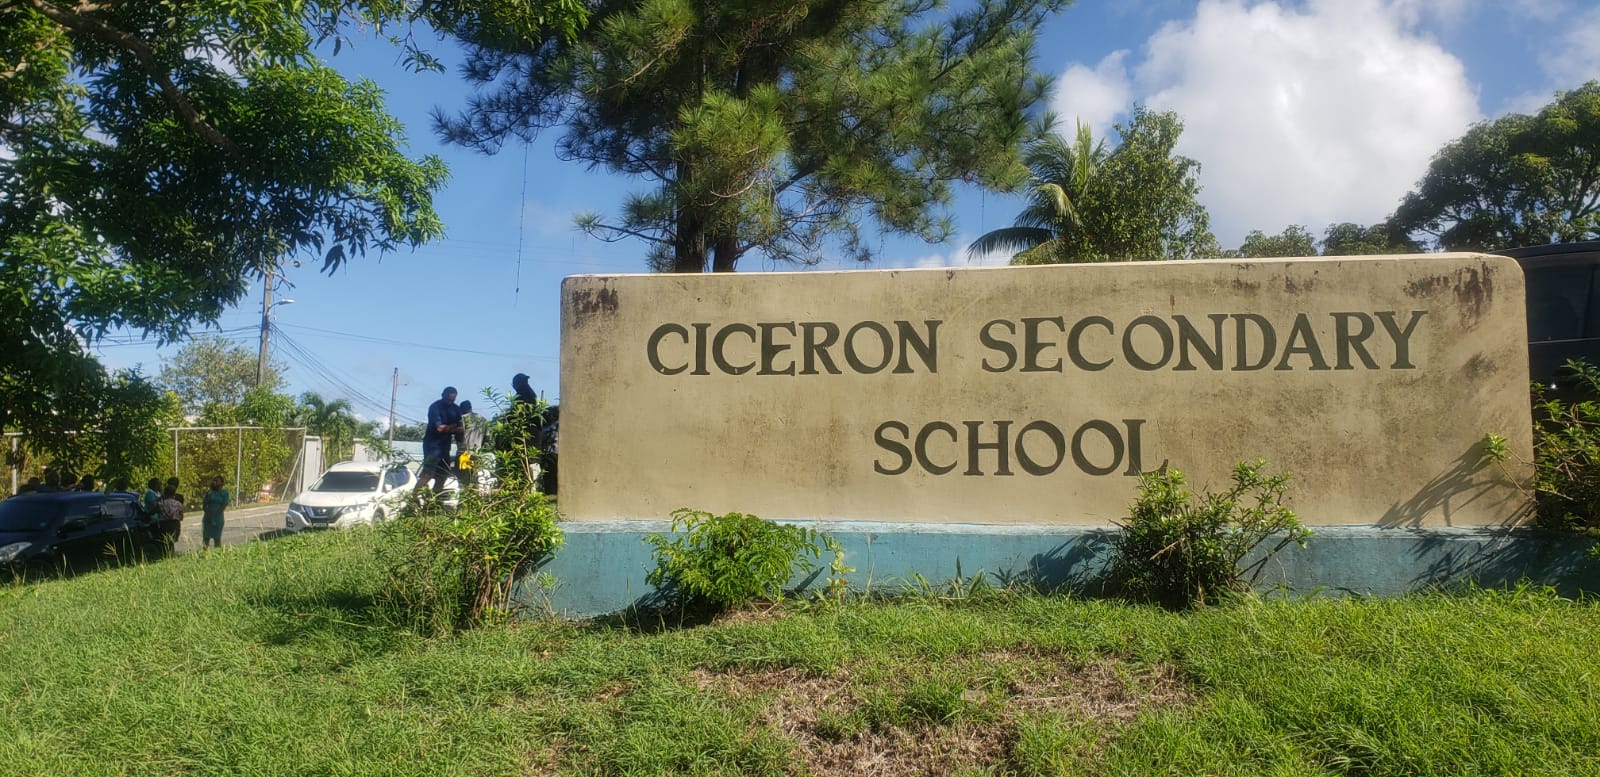 Ciceron Secondary School